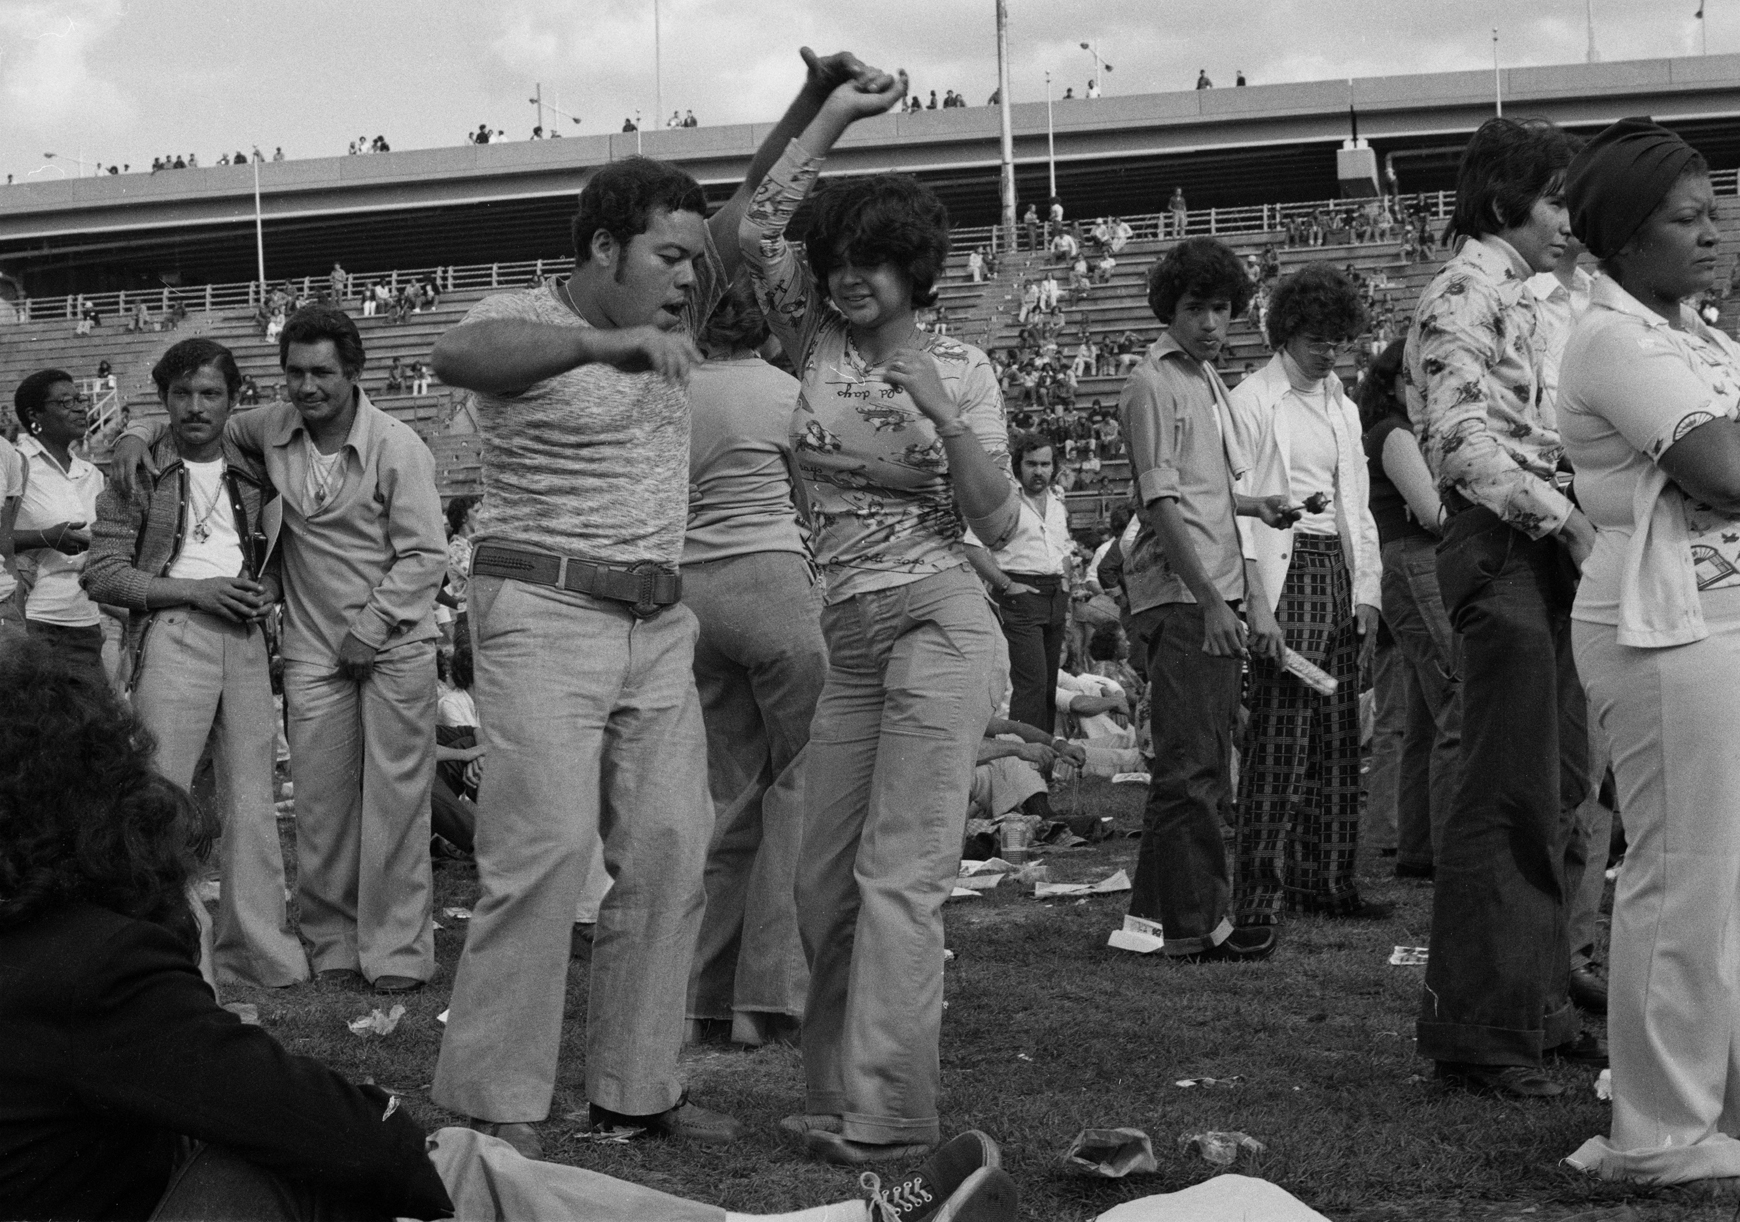 1974年、カジュアルな服装のカップルが、ランドール島を背景に人々とサルサを踊ります。